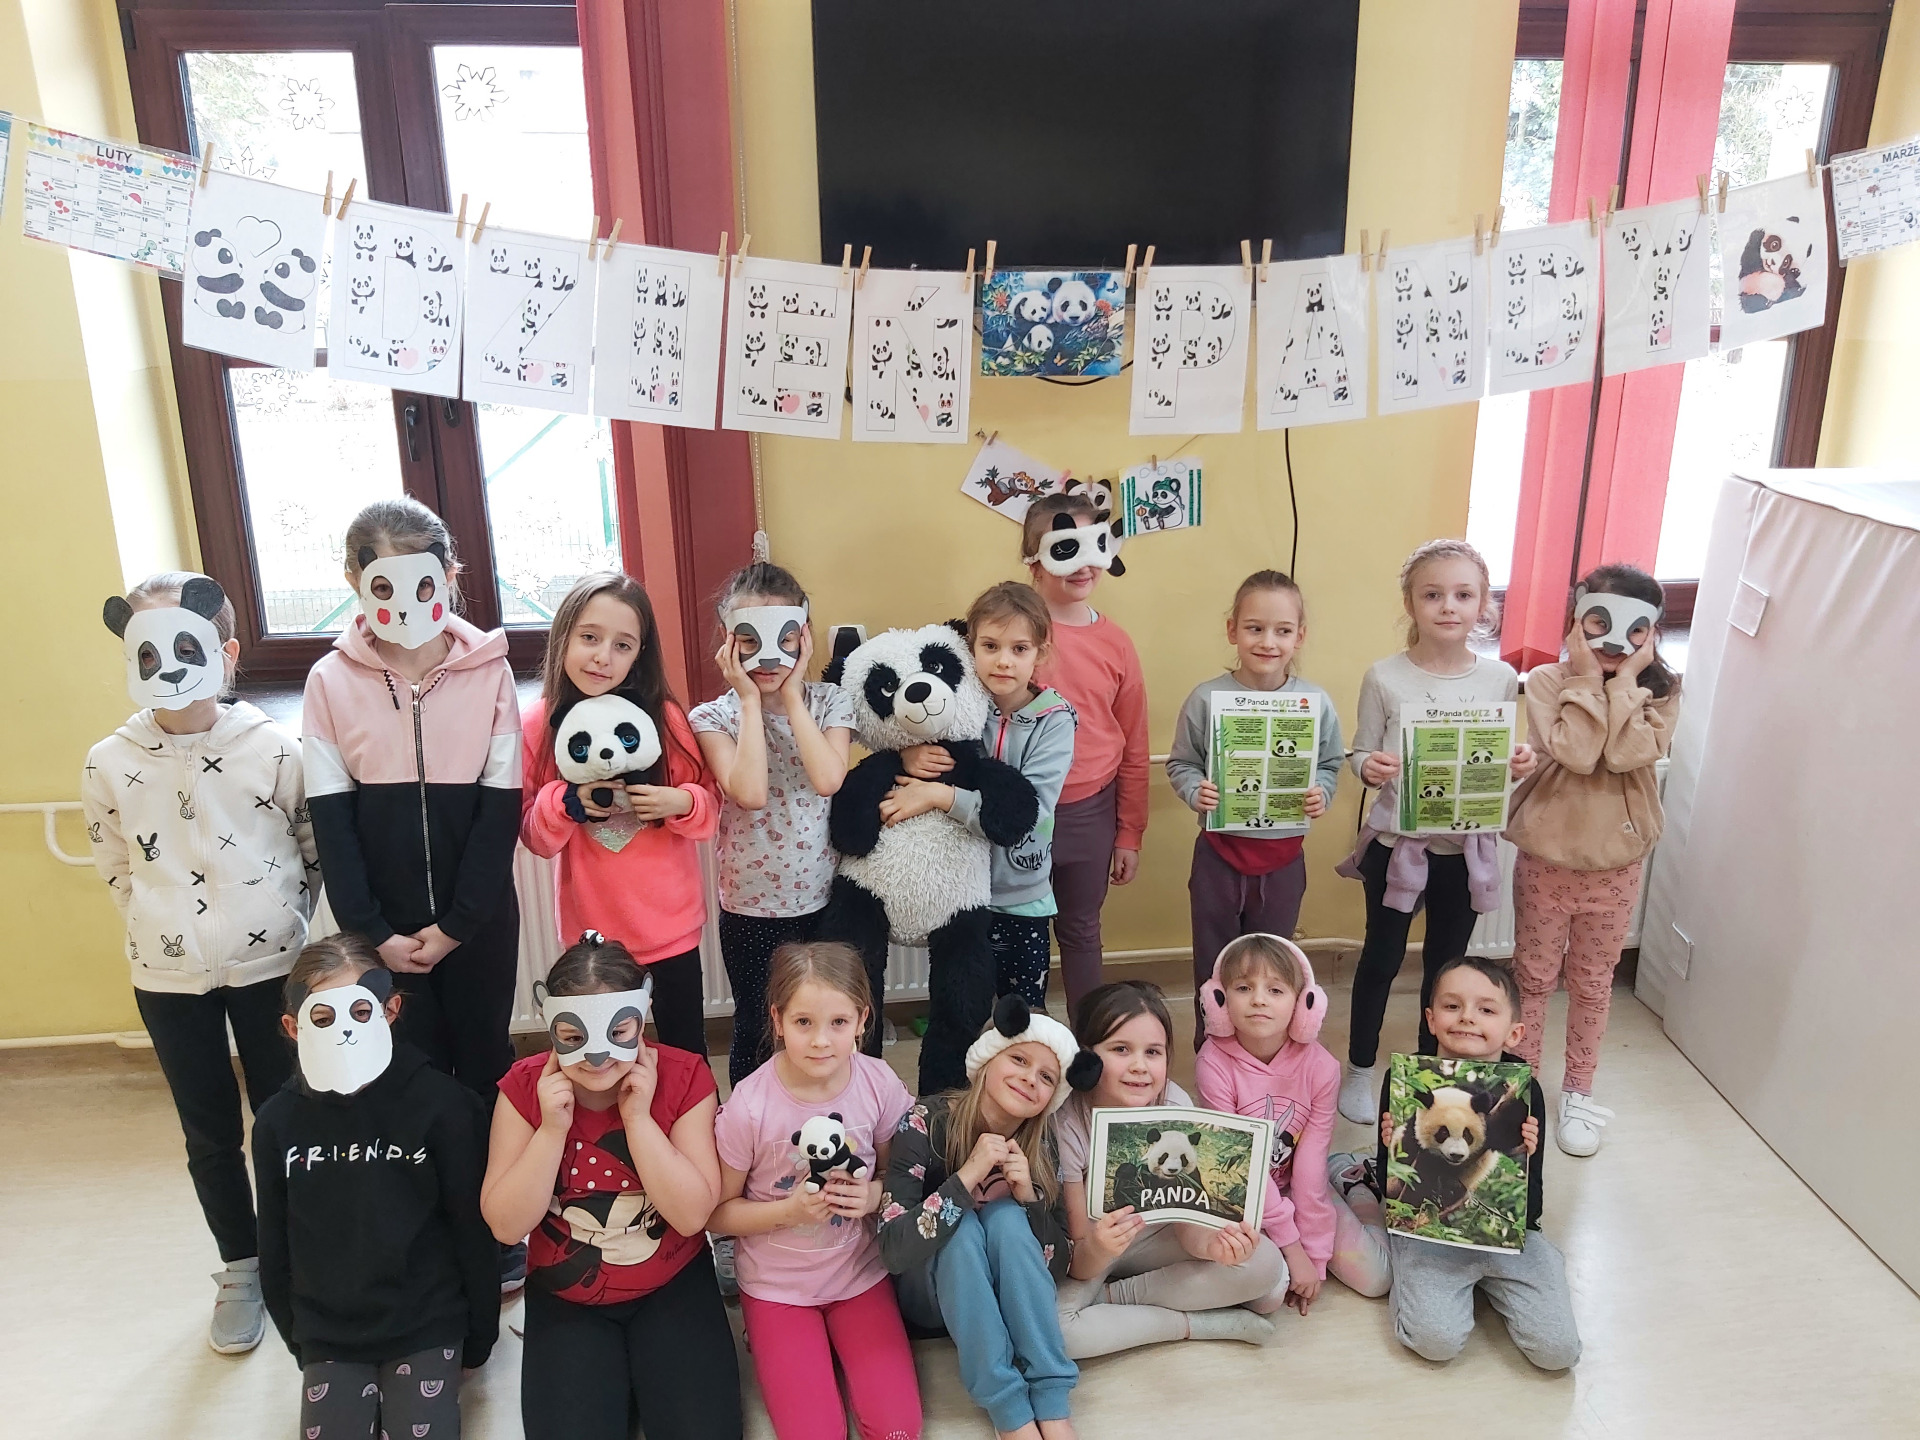 Zdjęcie przedstawia dzieci stojące pod napisem Dzień Pandy. Niektóre z dzieci trzymają w rękach maskotki pandy, inne zdjęcia przedstawiające wizerunek pandy wielkiej, jeszcze inne mają na twarzach pandzie maski.